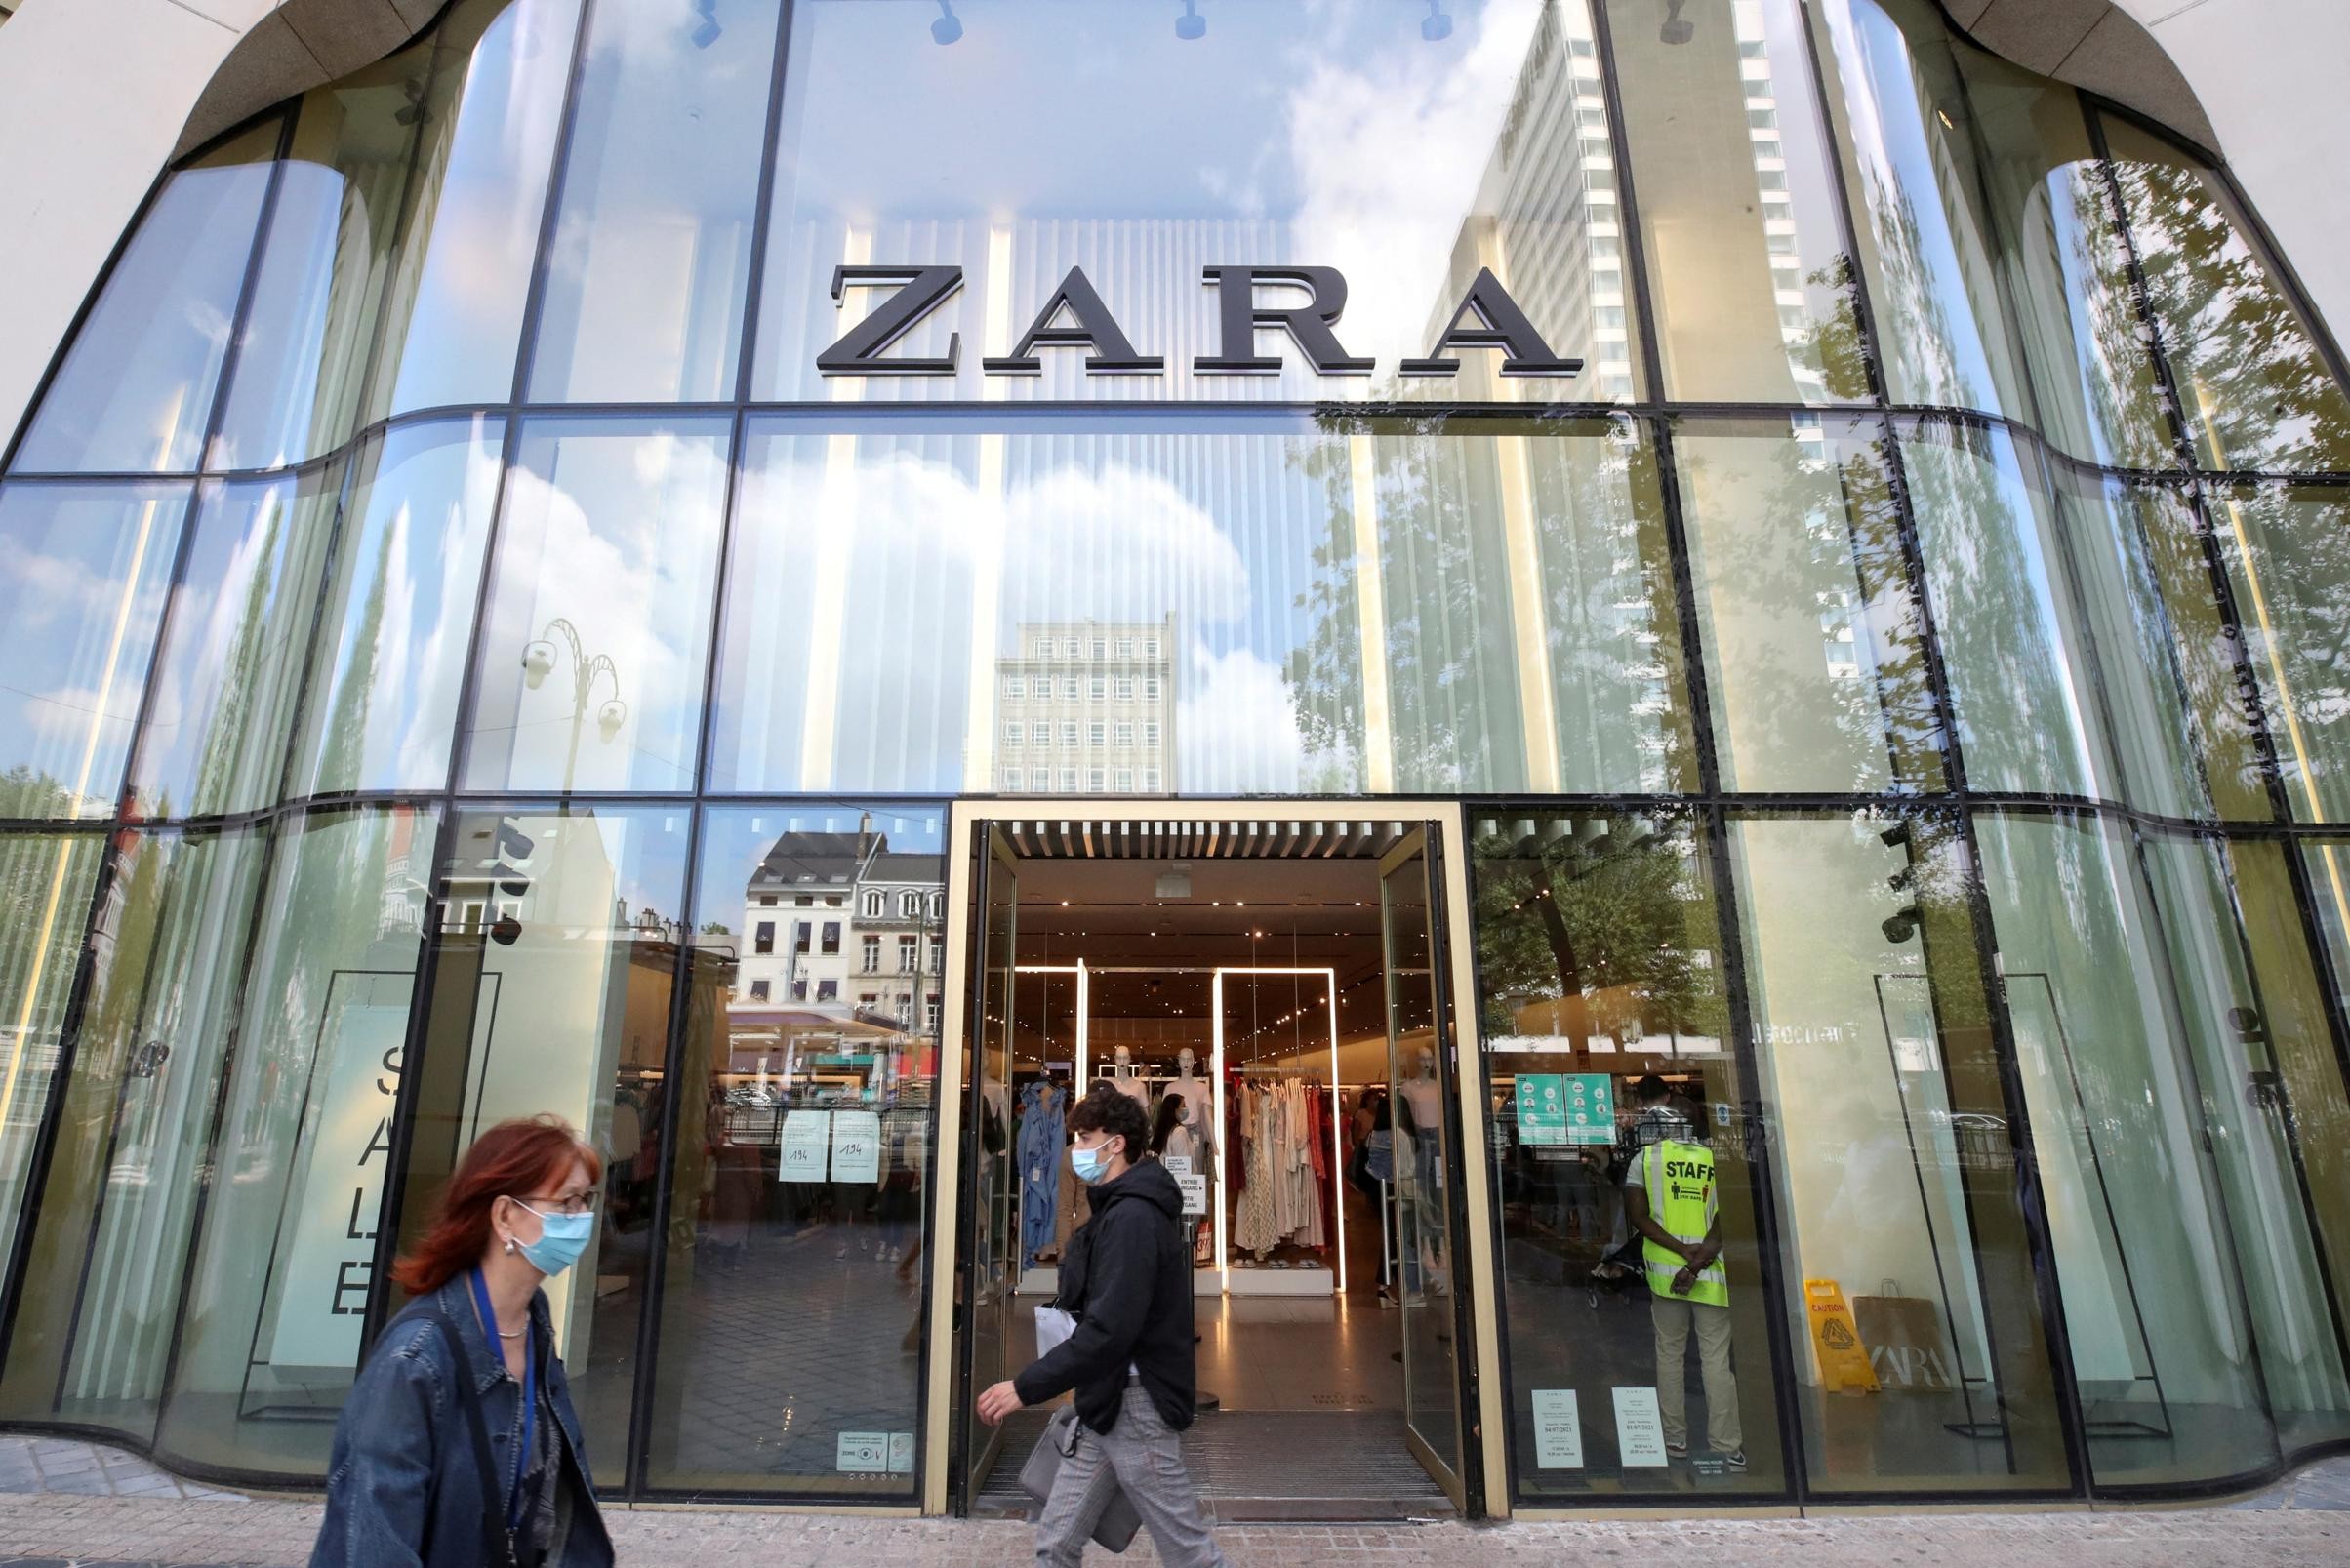 От видеоигр до роскошных часов, Zara стала последней в длинном списке транснациональных компаний, ушедших из России.